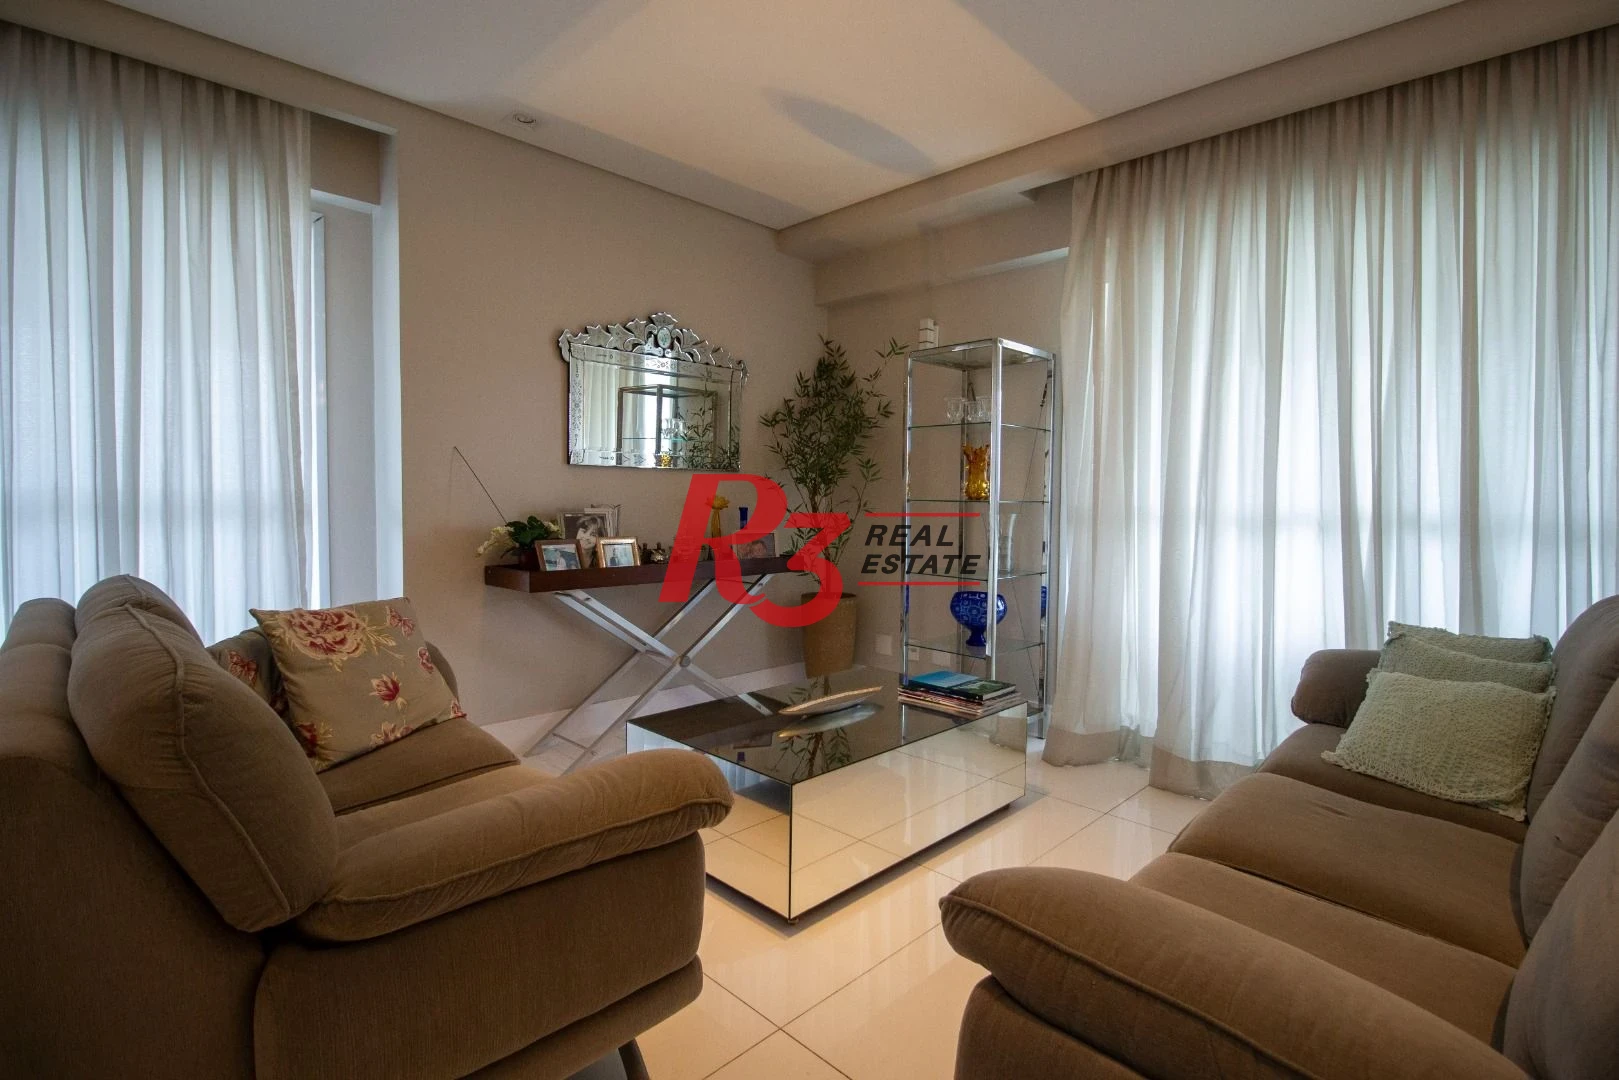 Apartamento com 4 dormitórios à venda, 324 m² por R$ 5.500.000,00 - Aparecida - Santos/SP